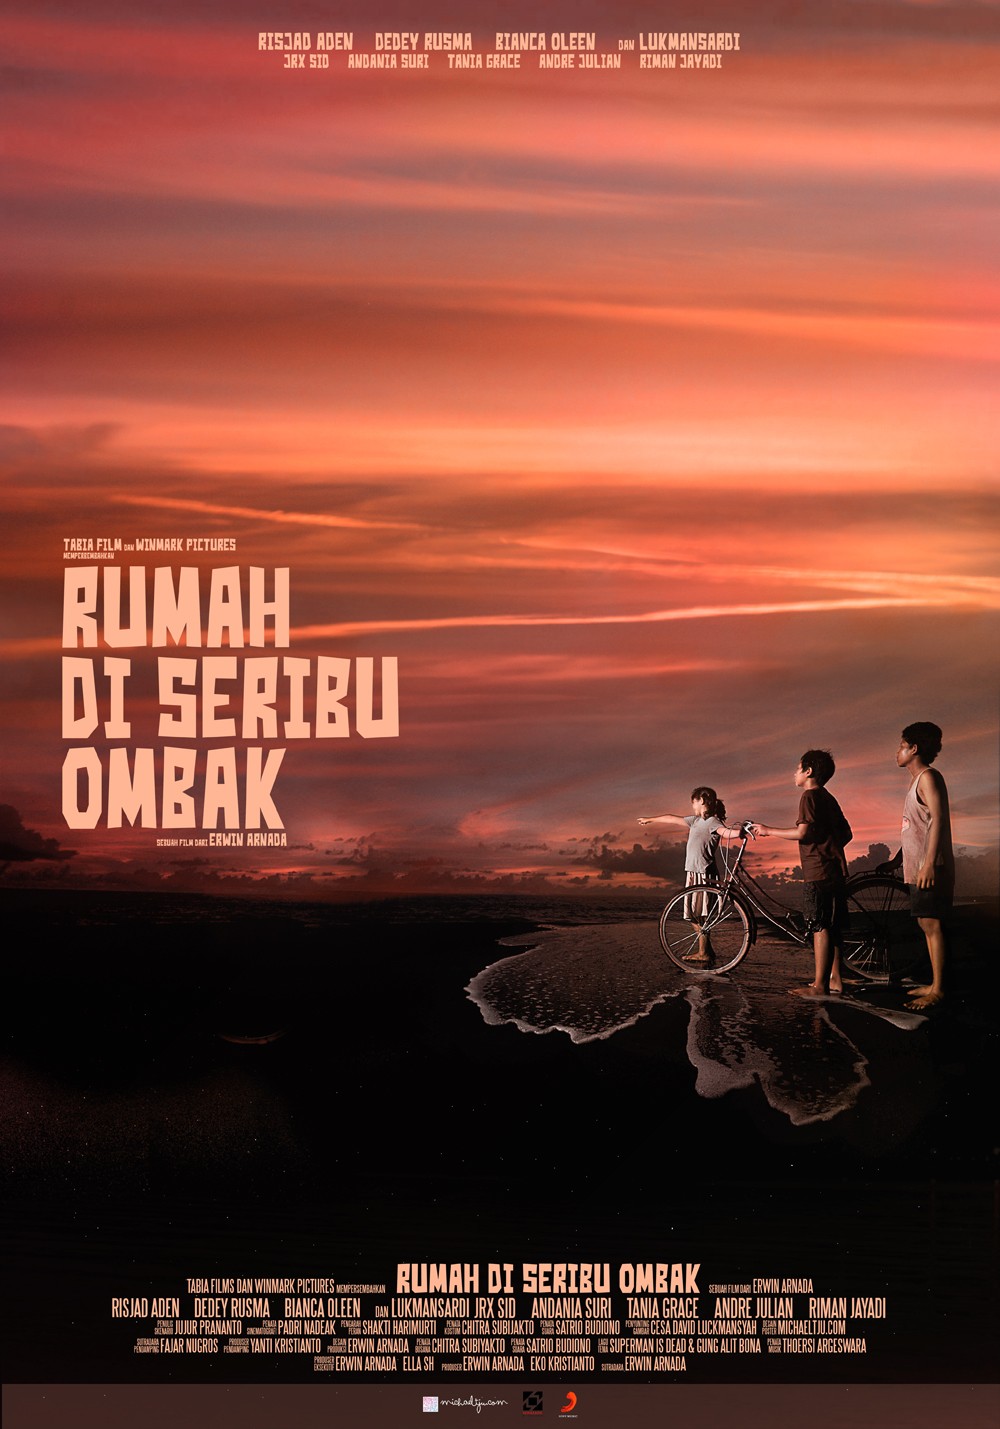 Extra Large Movie Poster Image for Rumah di seribu ombak (#2 of 4)